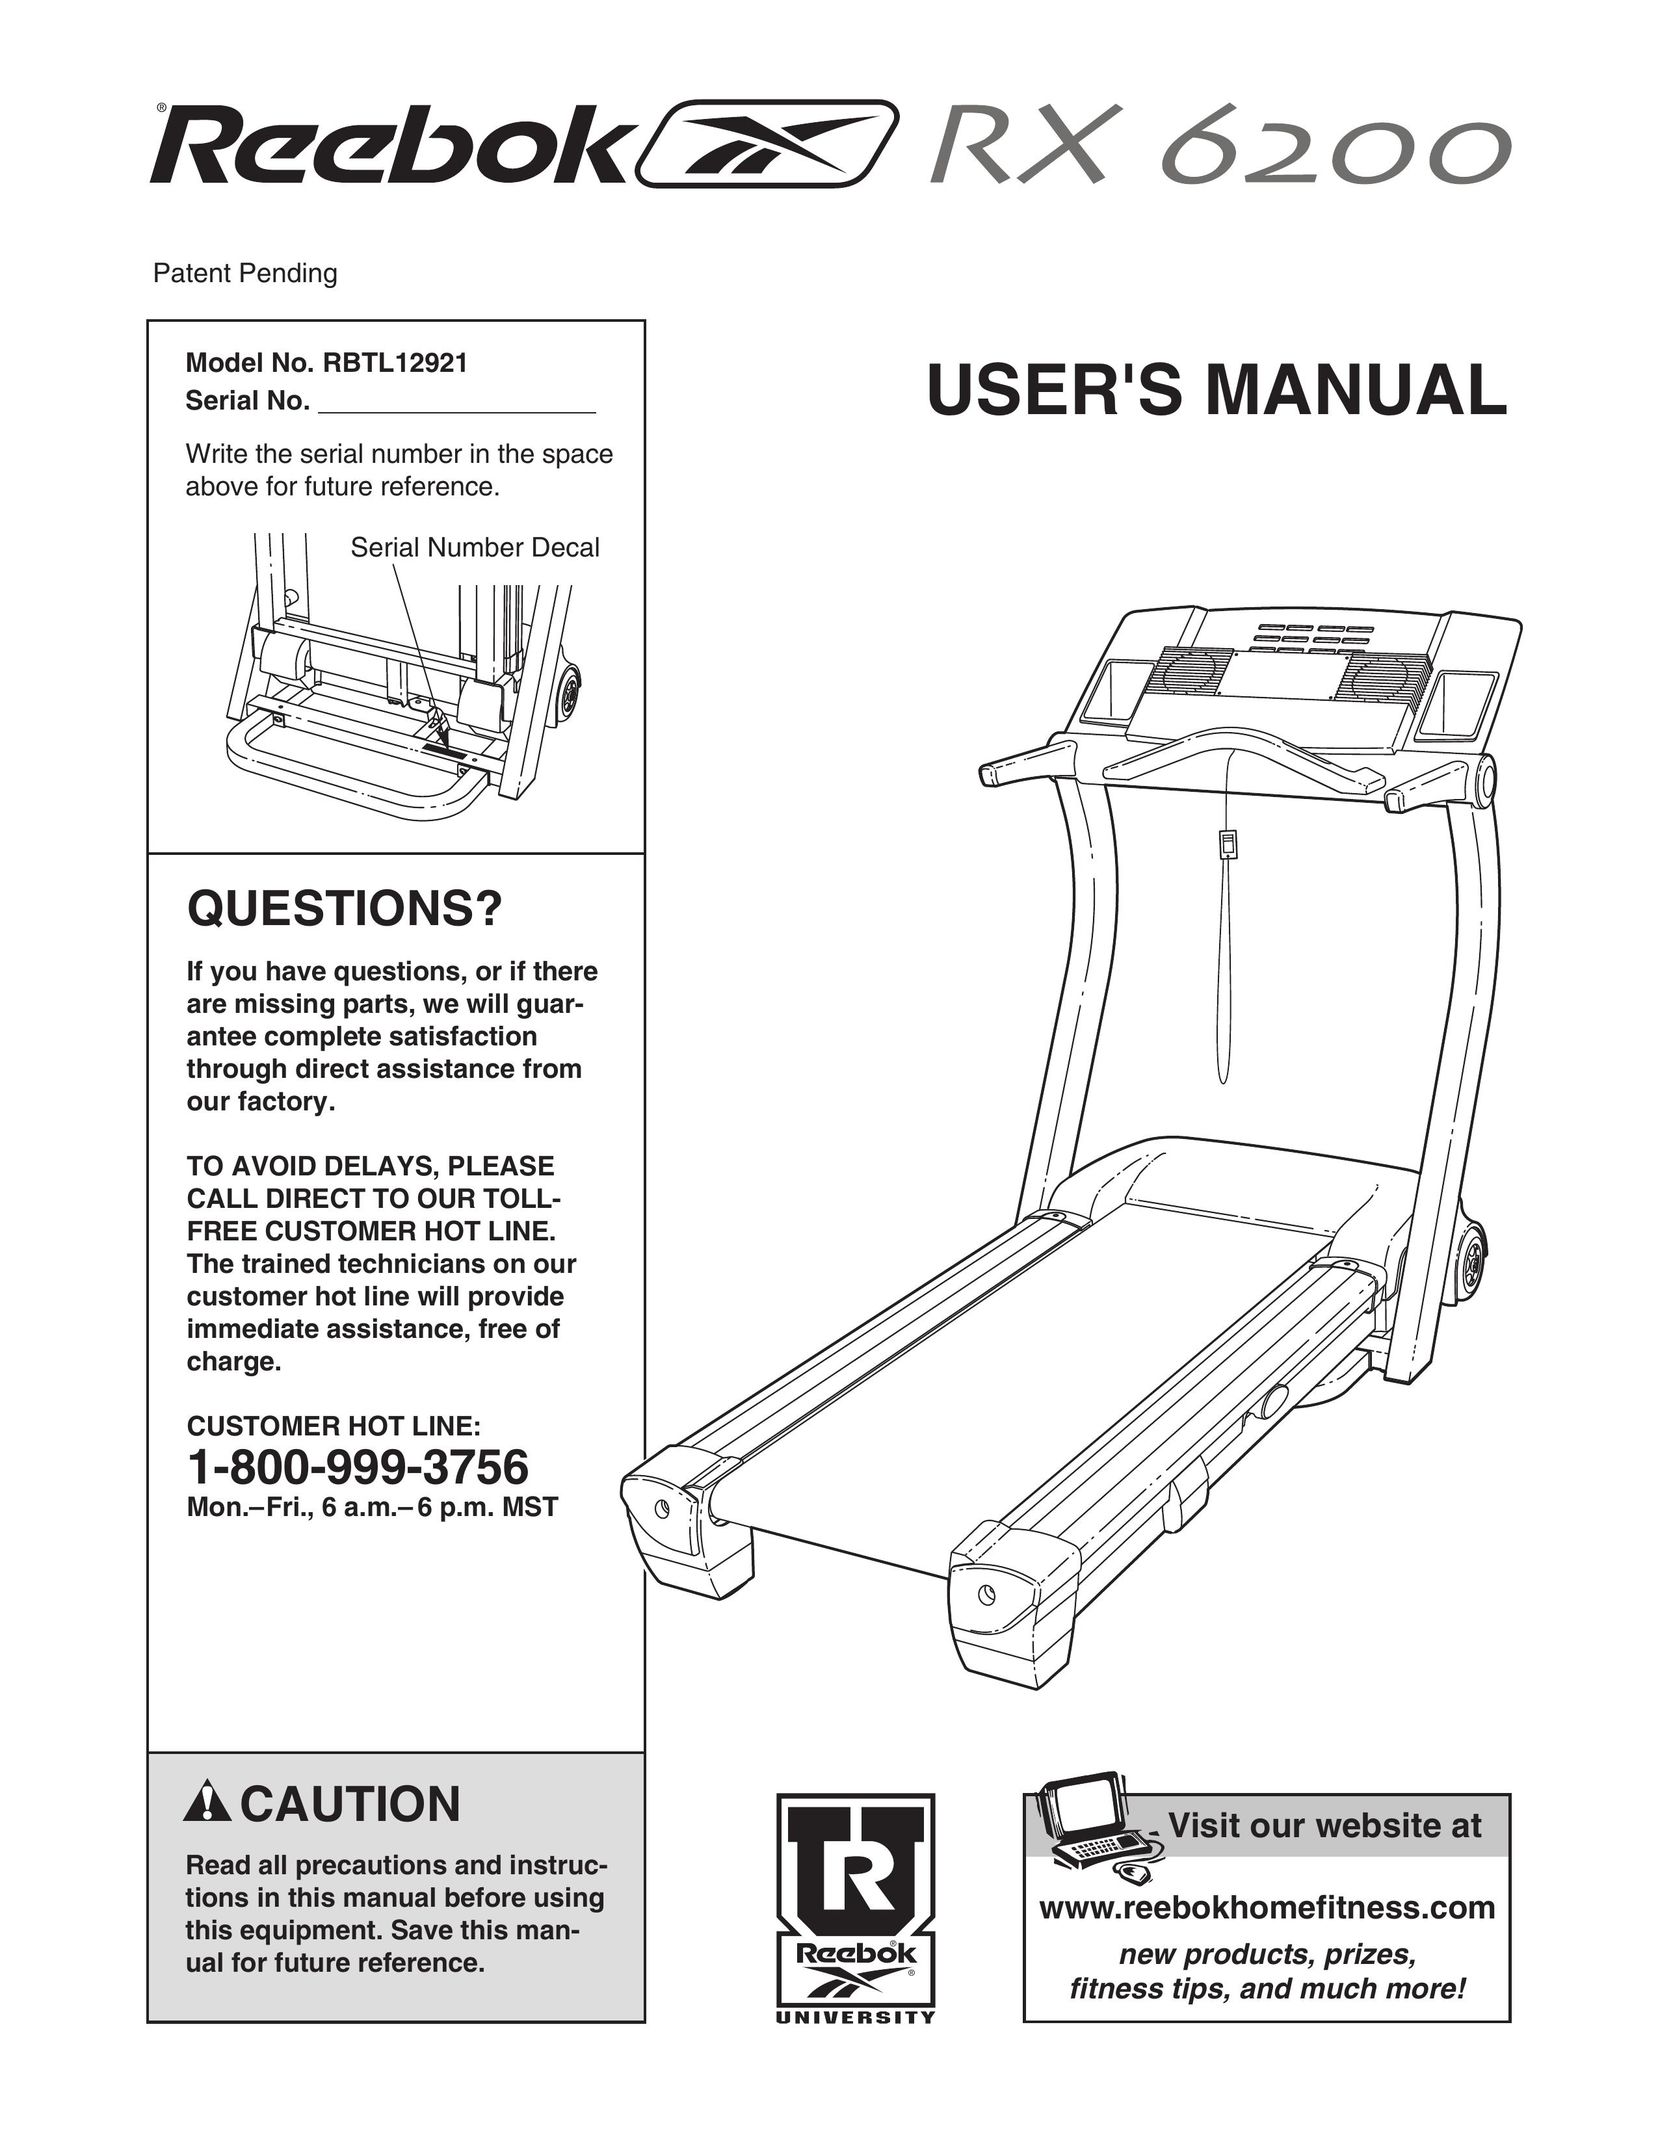 Reebok Fitness RBTL12921 Treadmill User Manual